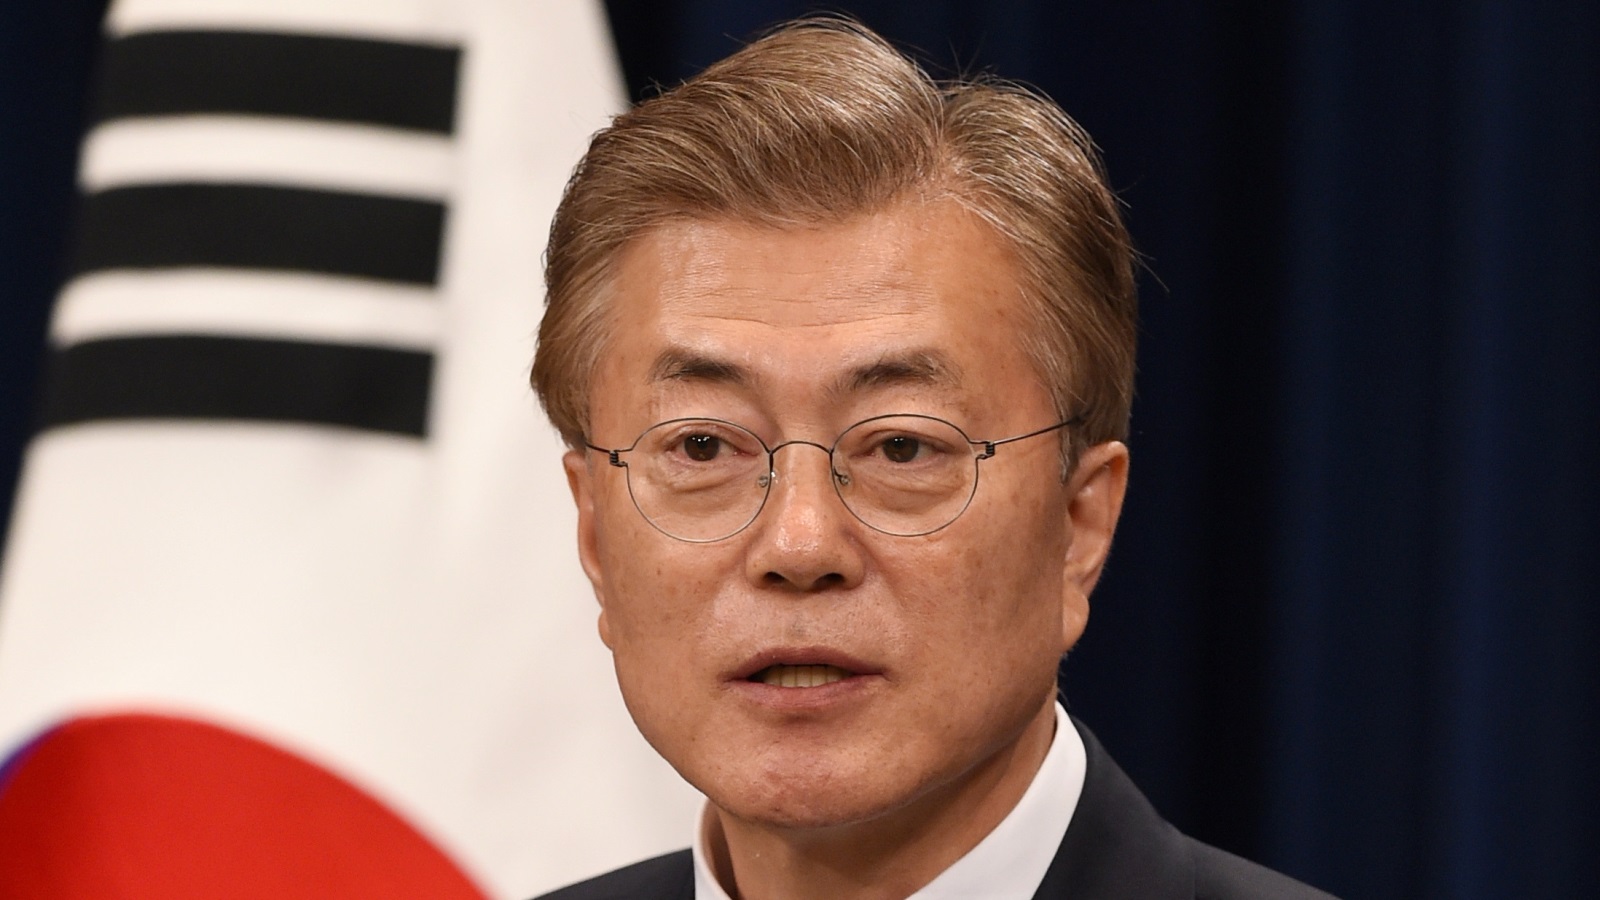  الرئيس الكوري الجنوبي الجديد اتفق مع نظيره الأميركي على التعاون في حل المسائل الأمنية بشبه الجزيرة الكورية